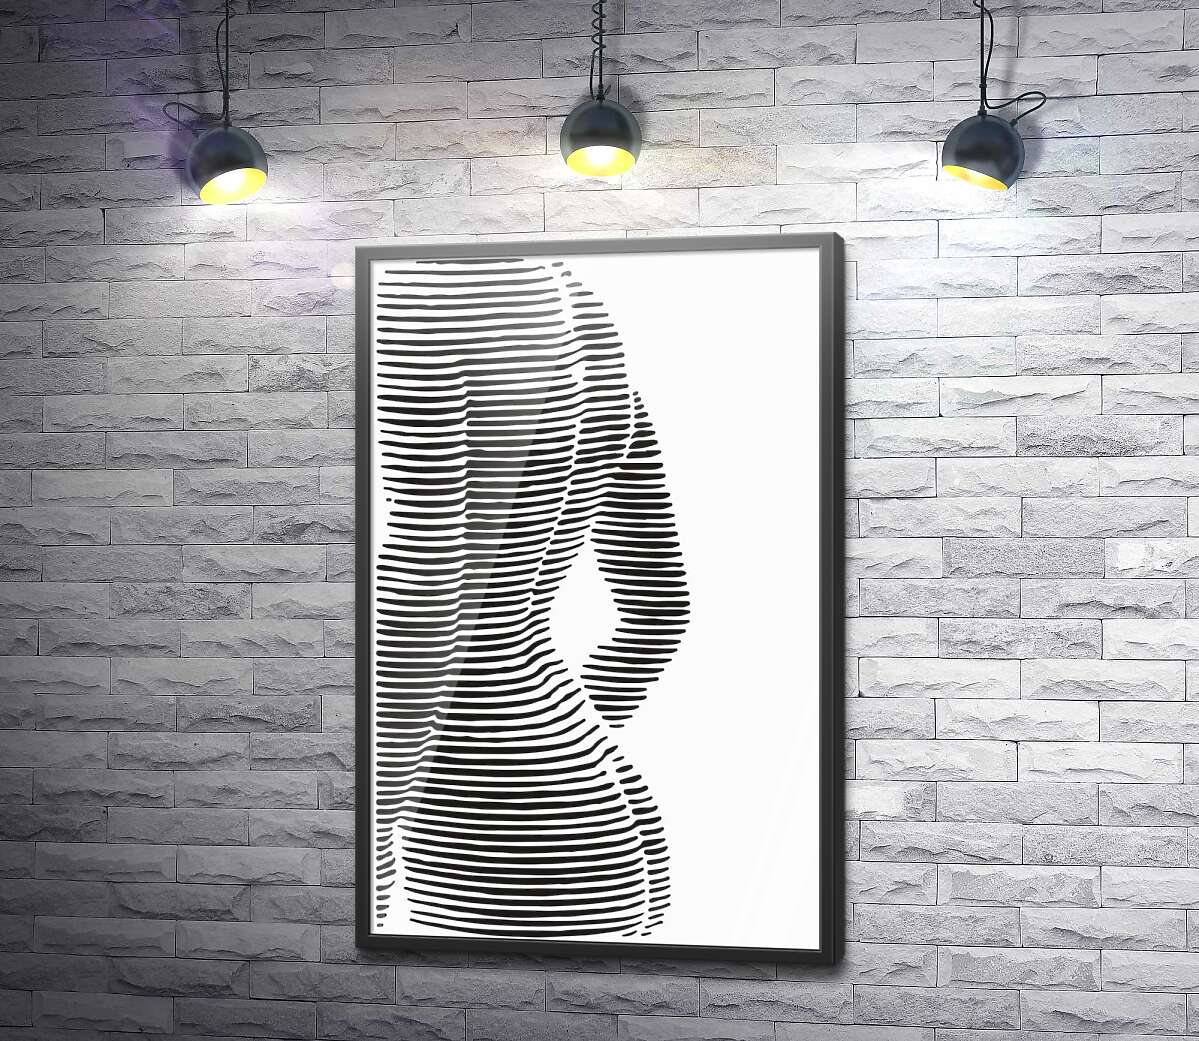 постер Образ женского тела в горизонтальных линиях